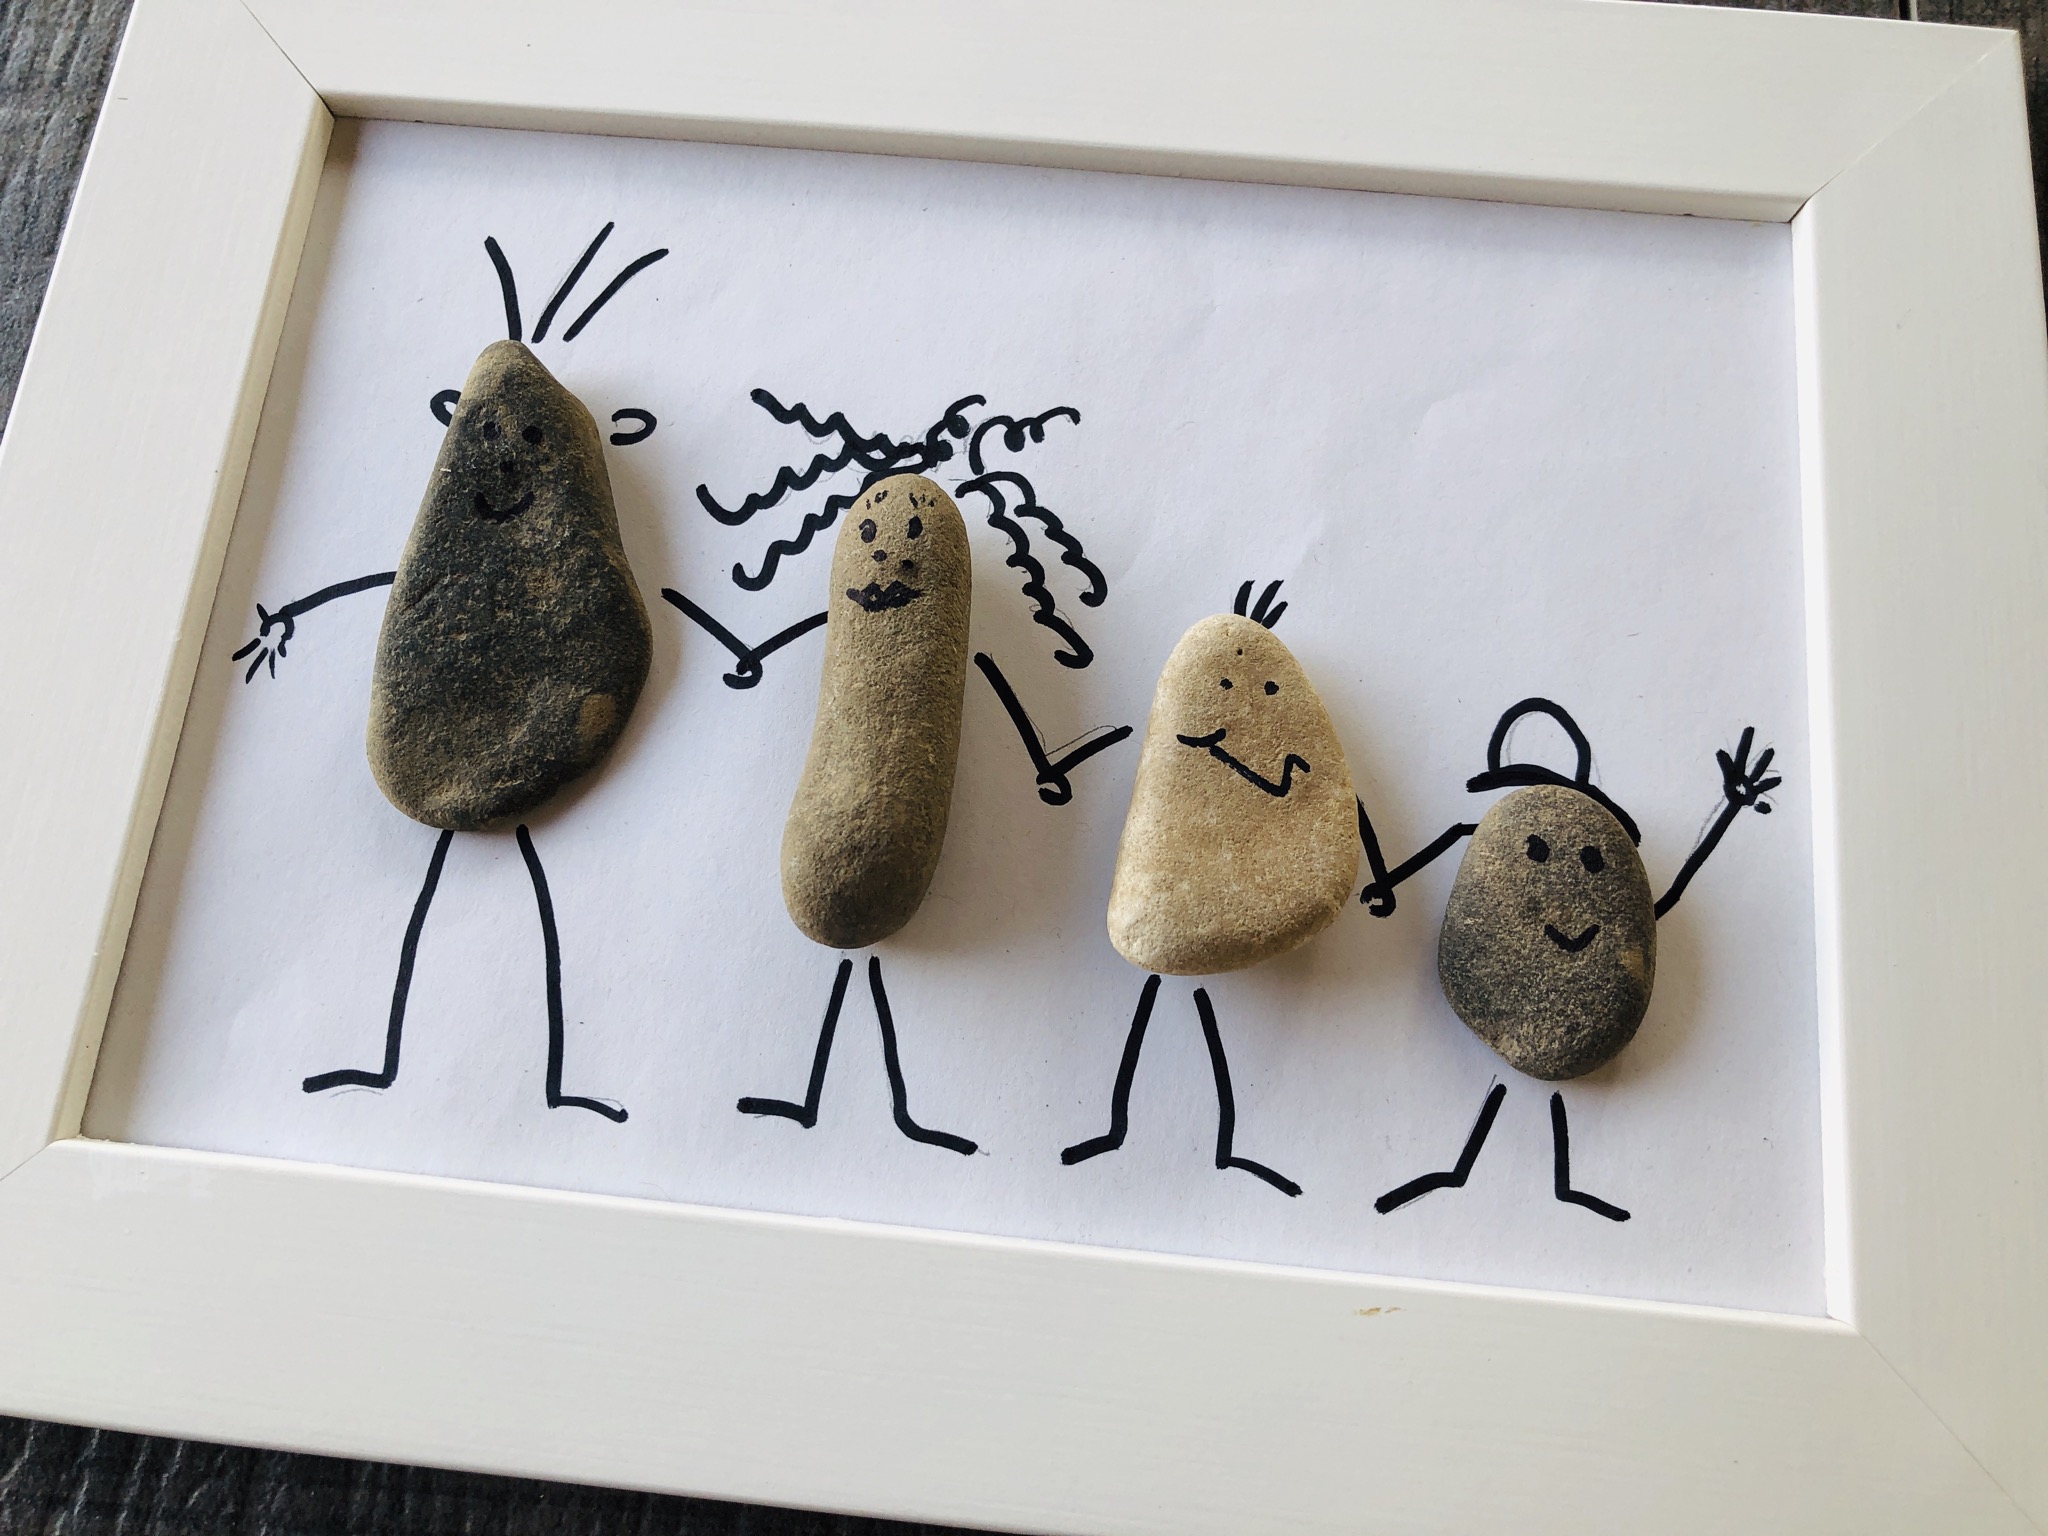 Bild zum Schritt 9 für das Bastel- und DIY-Abenteuer für Kinder: 'Abschließend klebt die Steine mit Heißkleber auf die Glasscheibe.'